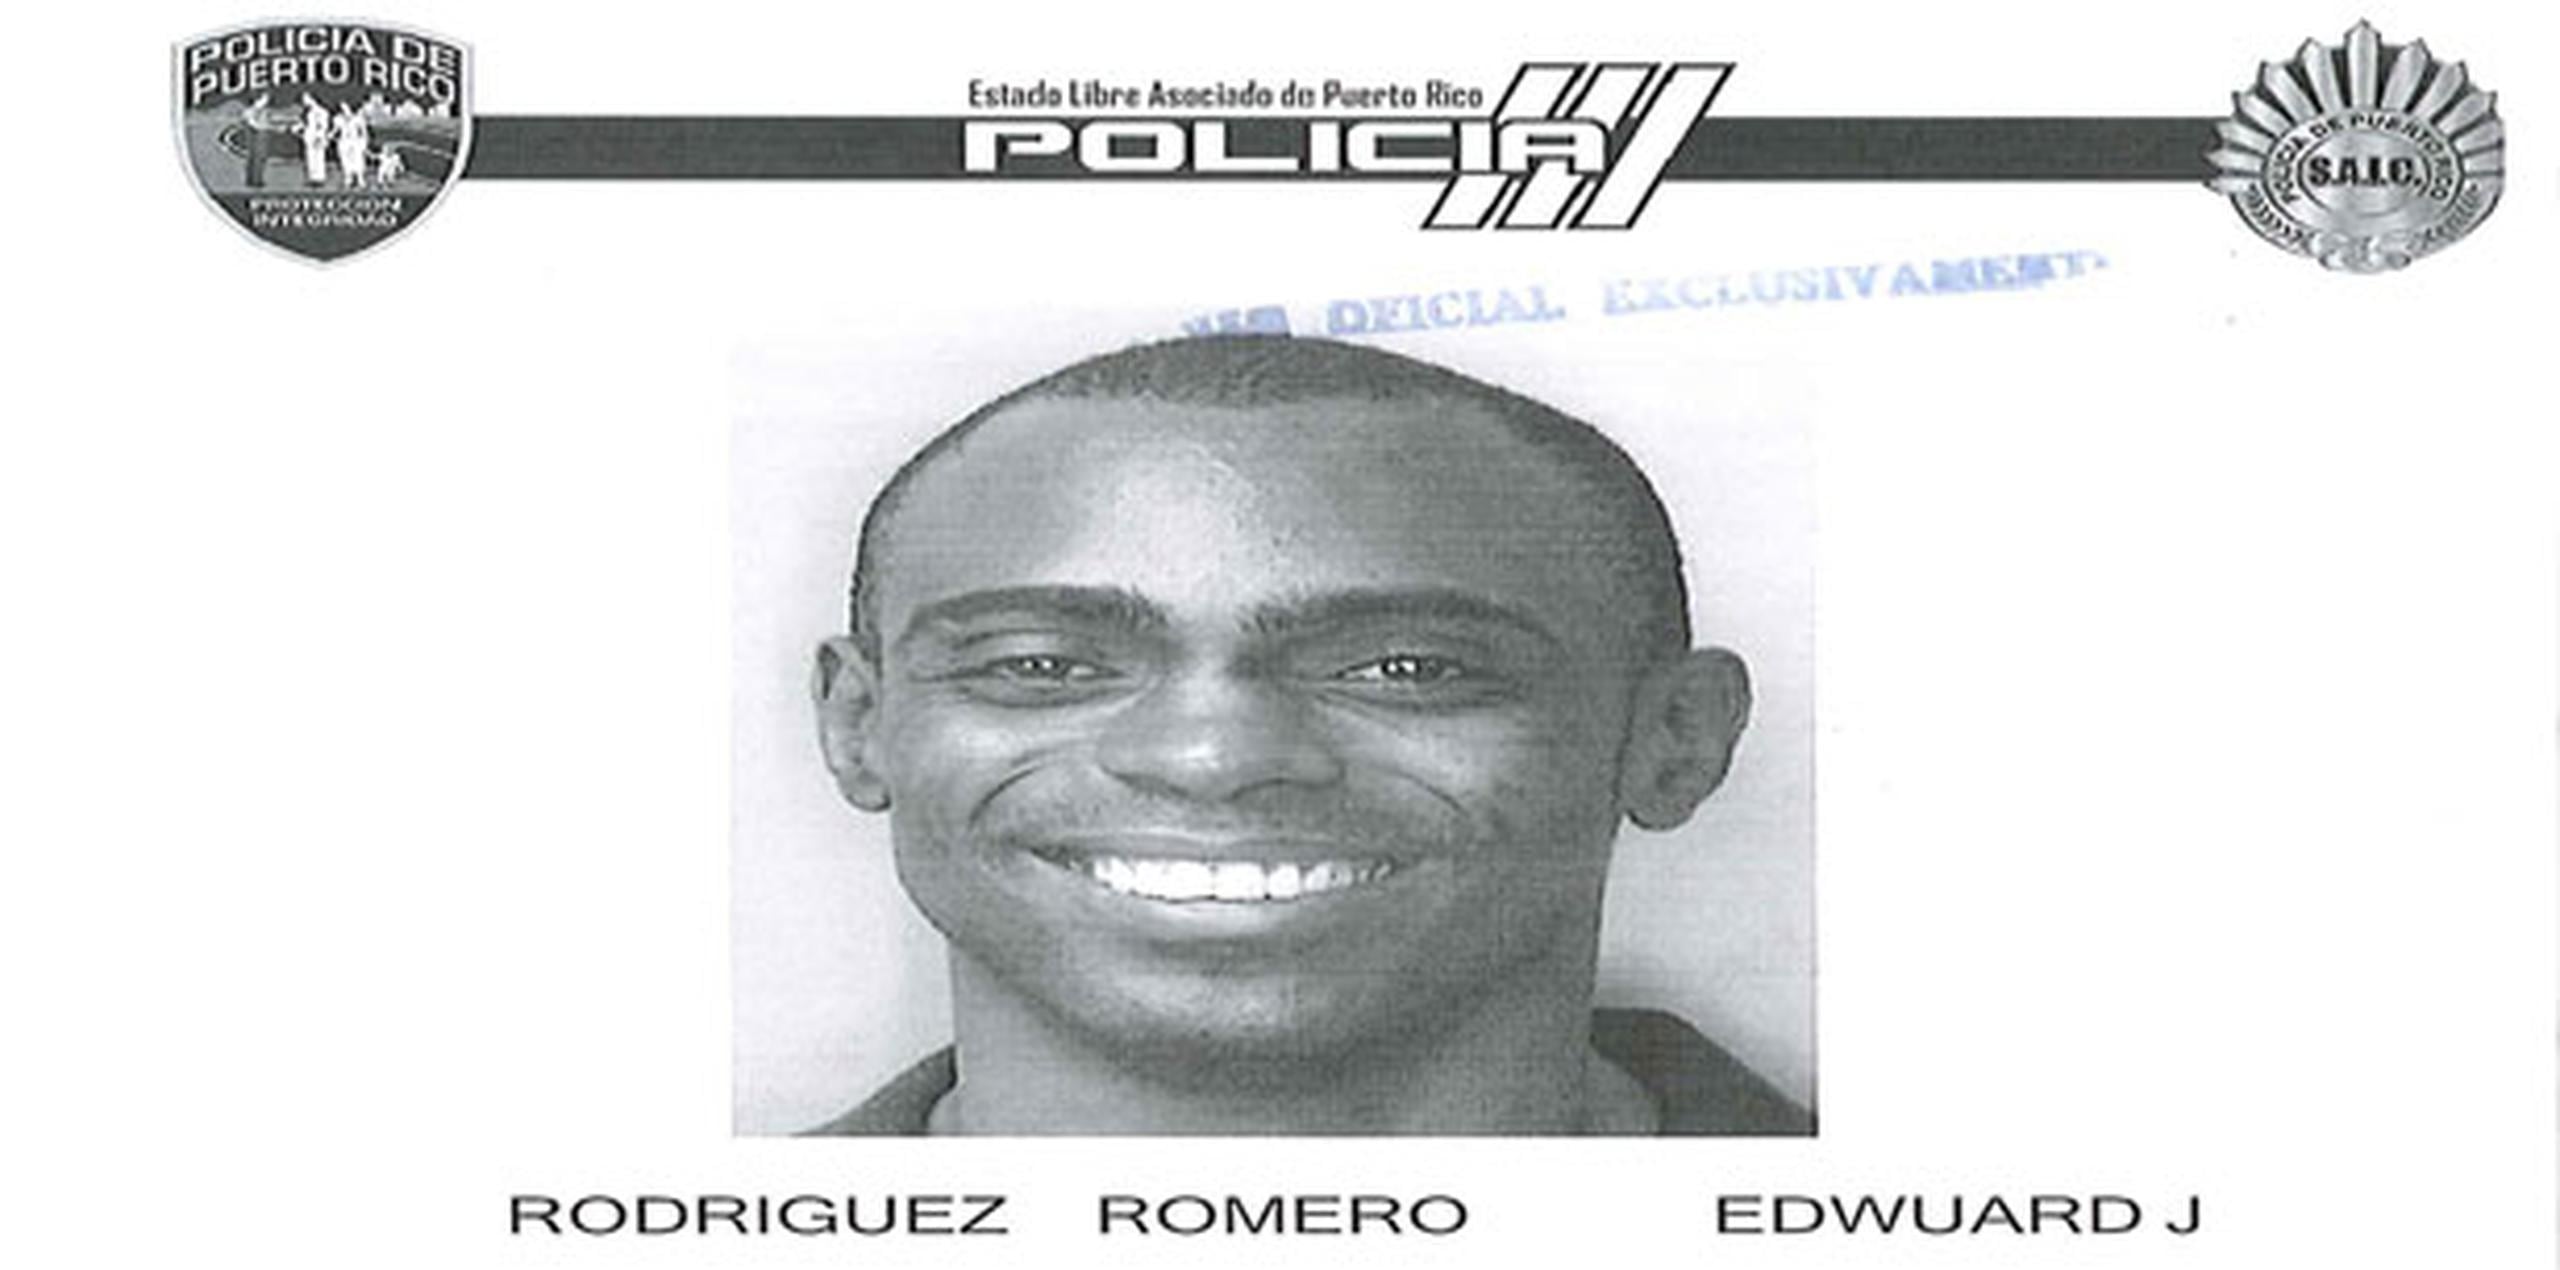 Edwuard J. Rodríguez Romero, de 34 años, tiene antecedentes previos por el delito de apropiación ilegal. (Suministrada)